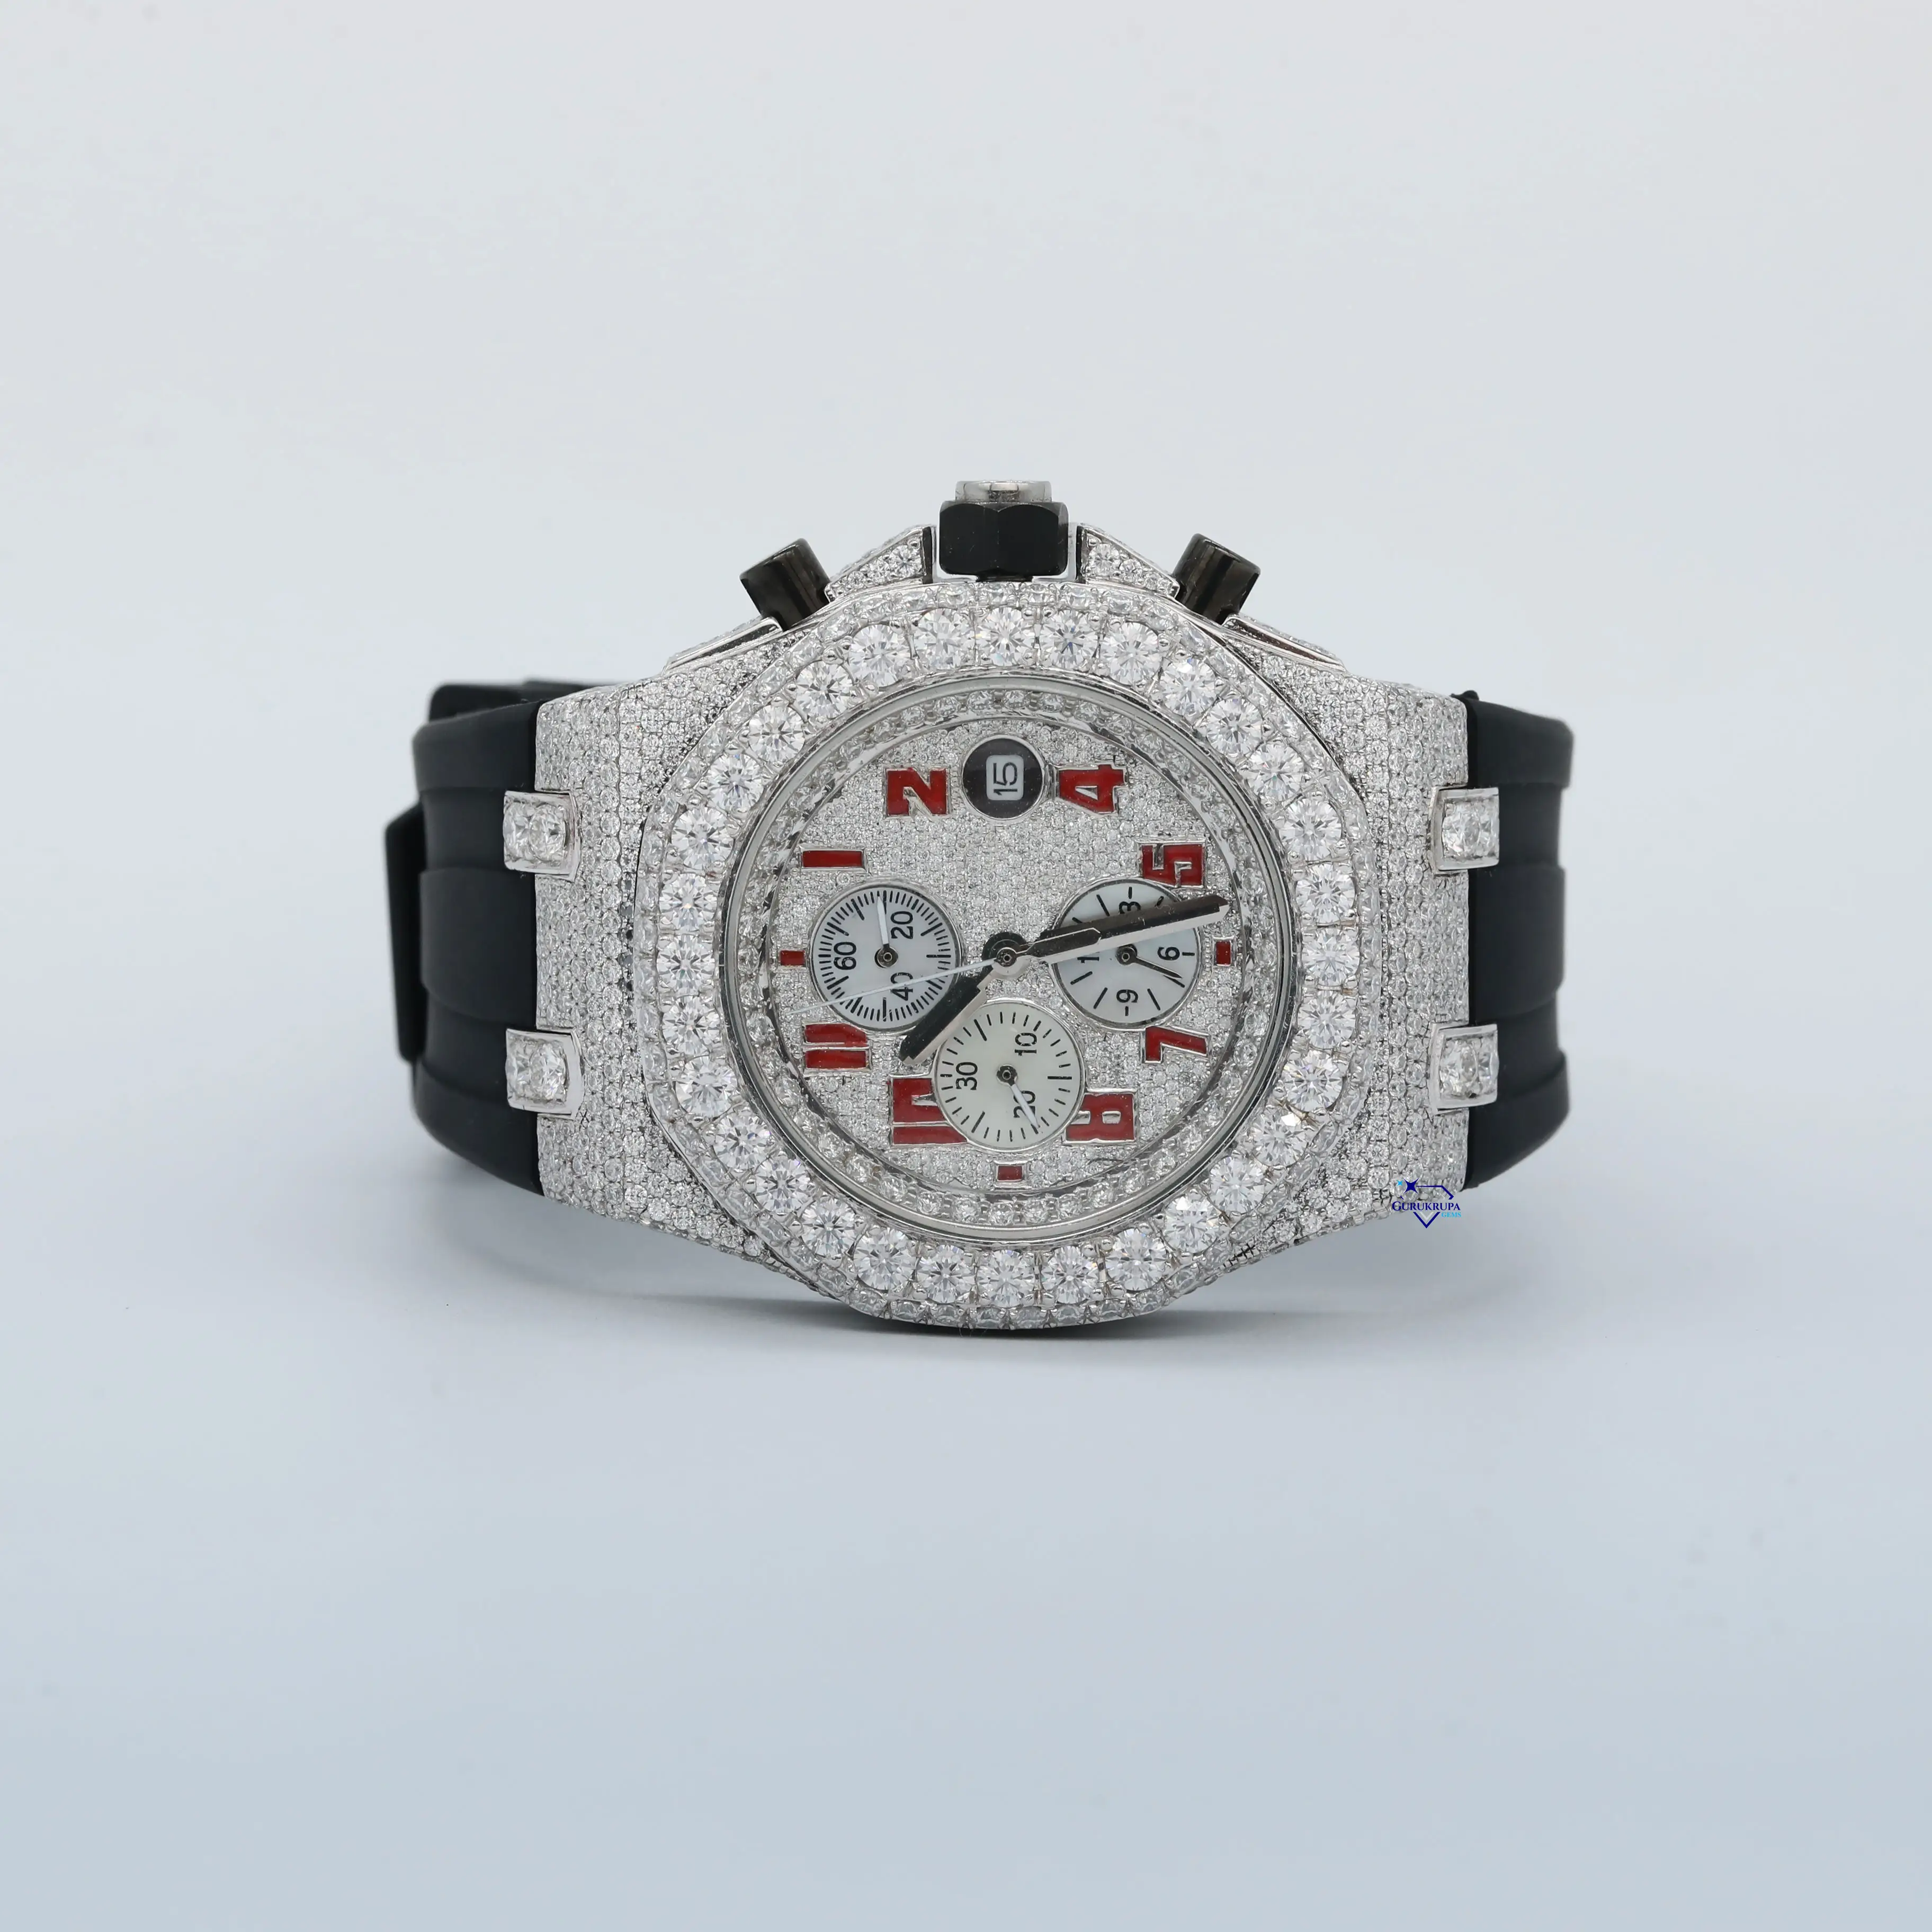 Presentamos un reloj deslumbrante que combina la claridad VVS mejorada con un elegante diseño de cronógrafo con diamantes de moissanita